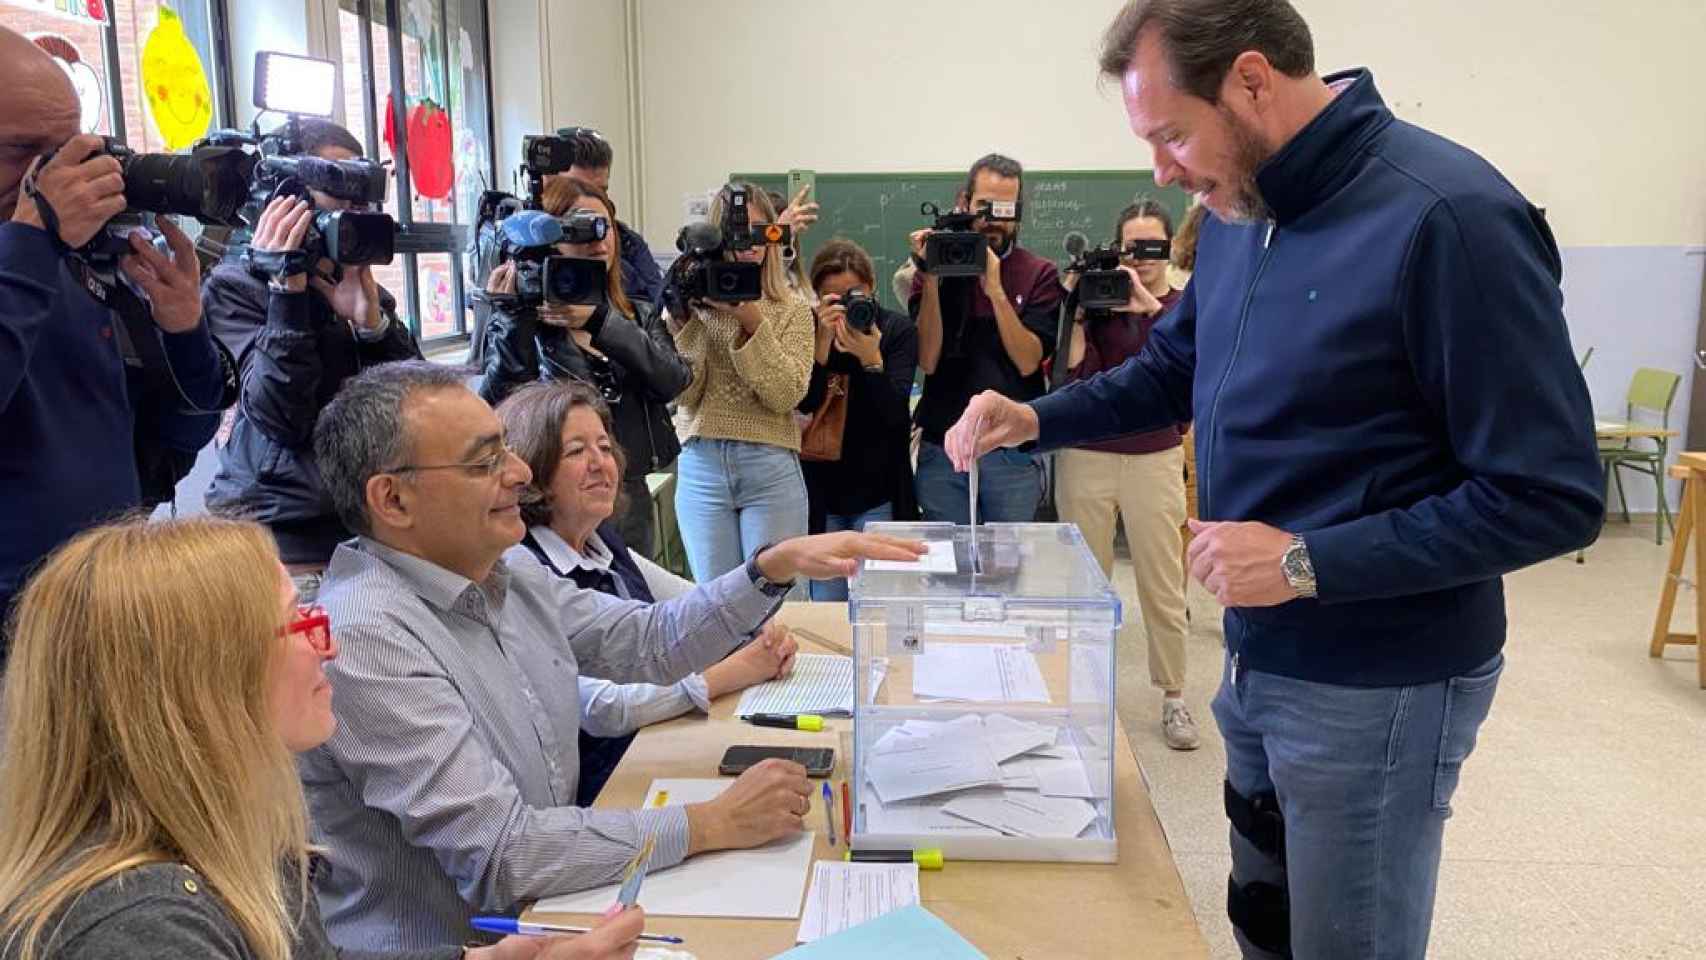 El alcalde de Valladolid y candidato socialista a la reelección, Óscar Puente, votando